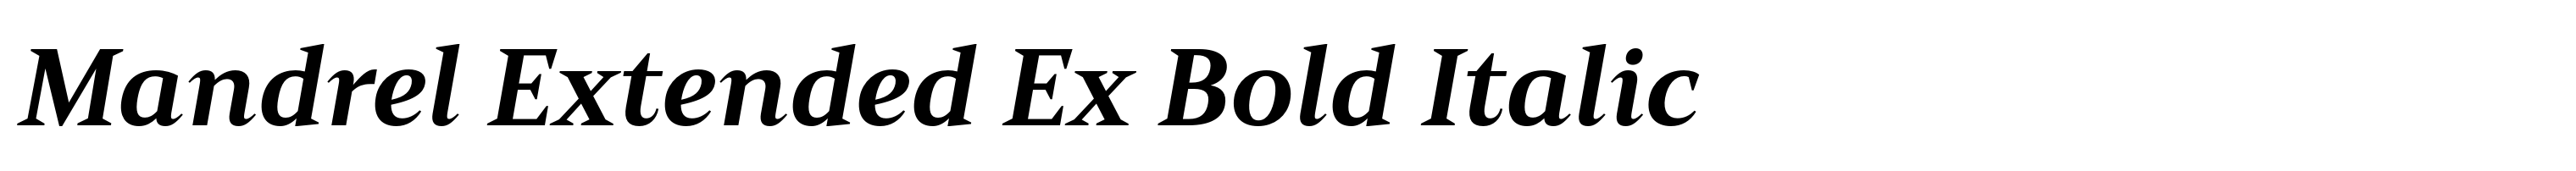 Mandrel Extended Ex Bold Italic